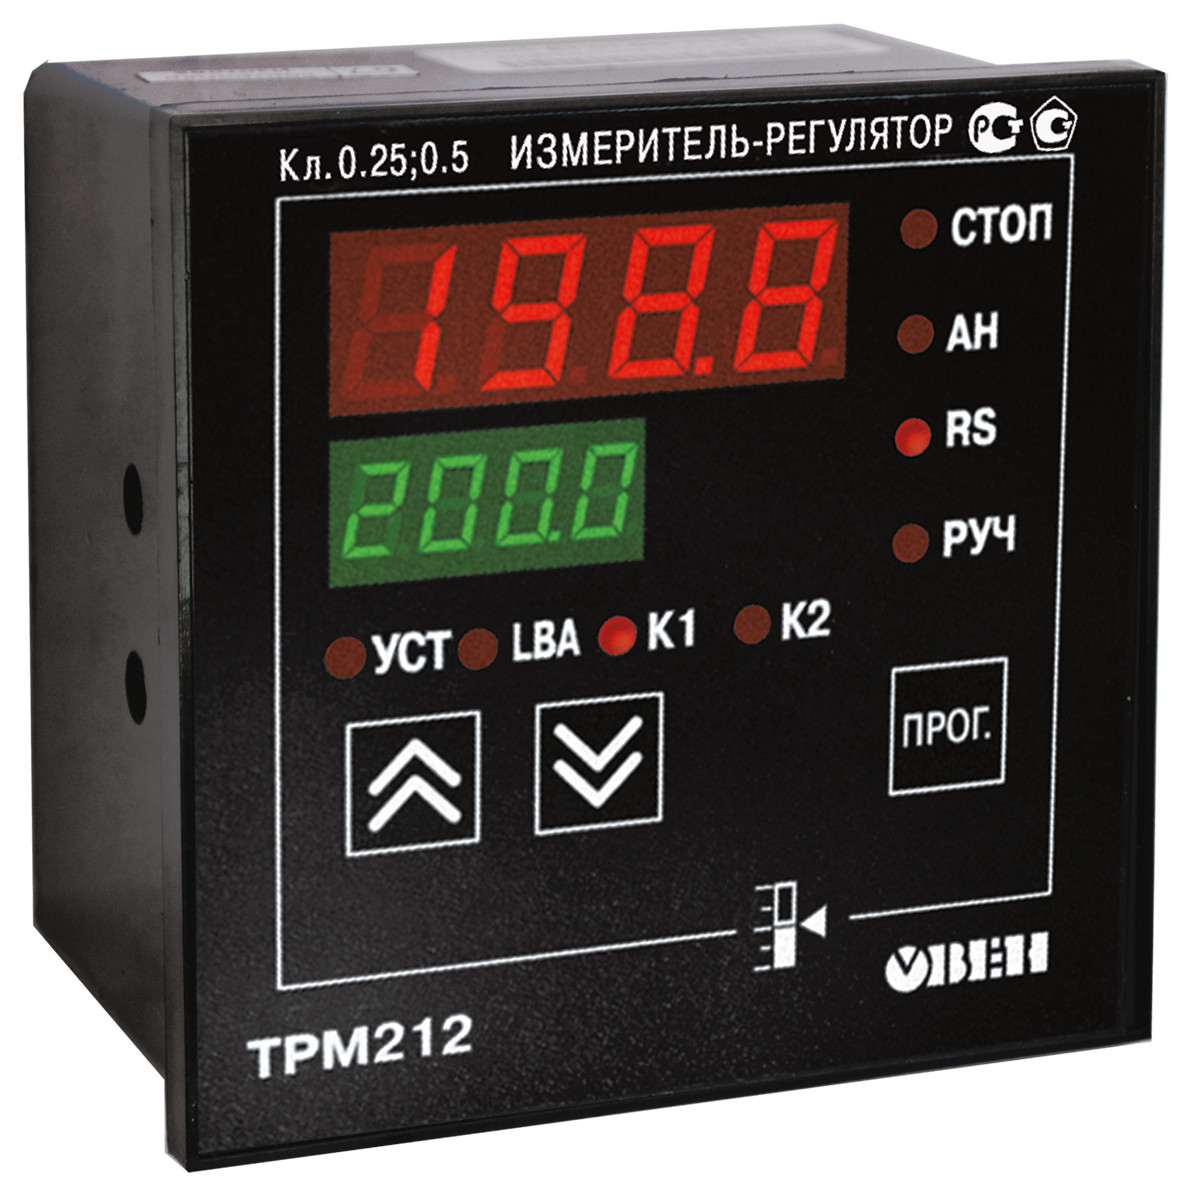 ТРМ212 ПІД-регулятор для керування засувками та триодовими клапанами з RS-485 Н, Р, З